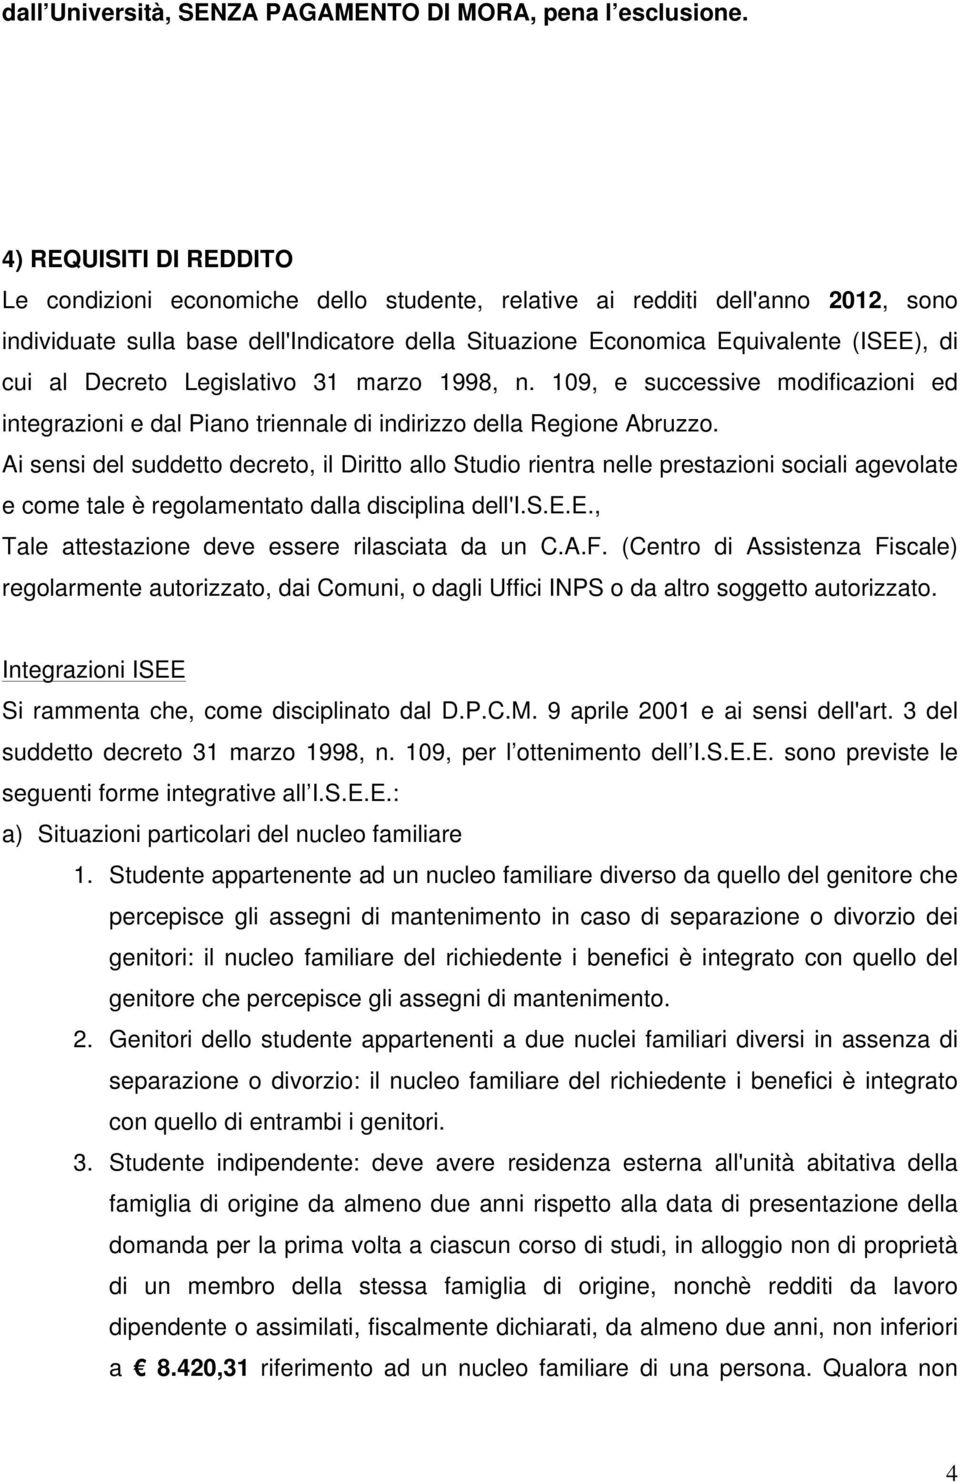 al Decreto Legislativo 31 marzo 1998, n. 109, e successive modificazioni ed integrazioni e dal Piano triennale di indirizzo della Regione Abruzzo.